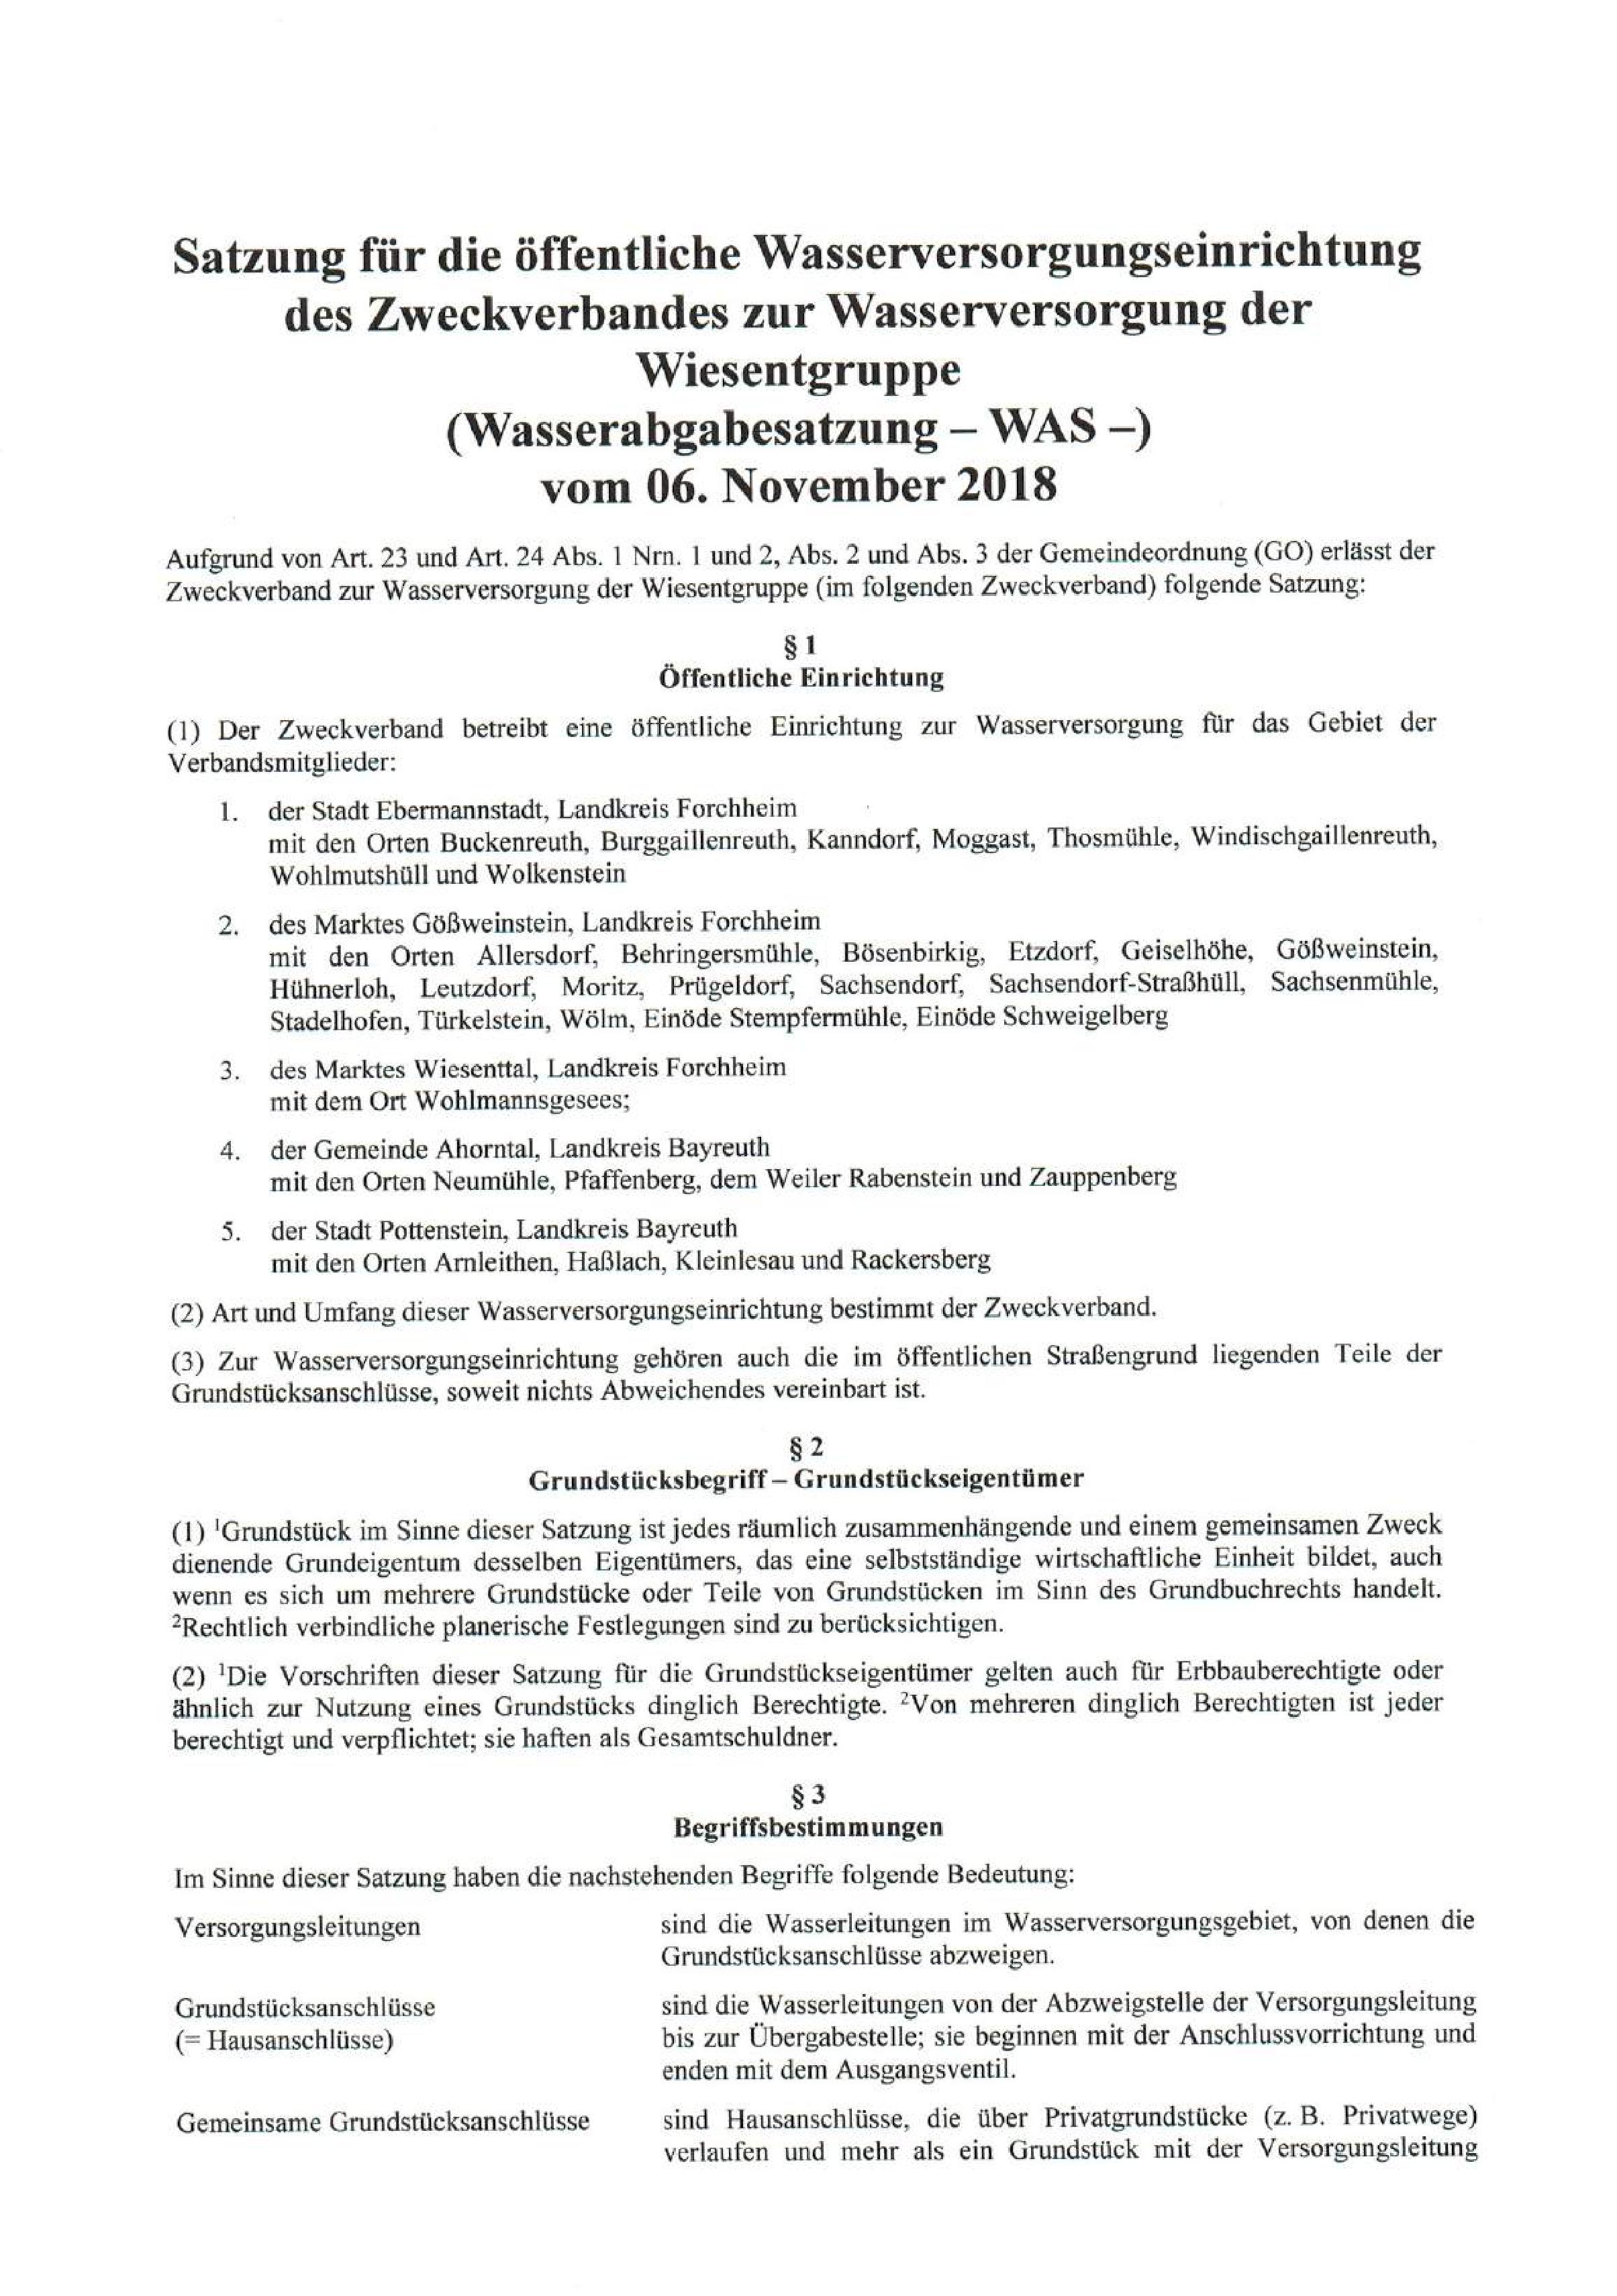 wasserleitung-ueberlange-leitung-auf-oeffentlicher-strasse-kosten-490131-1.jpg